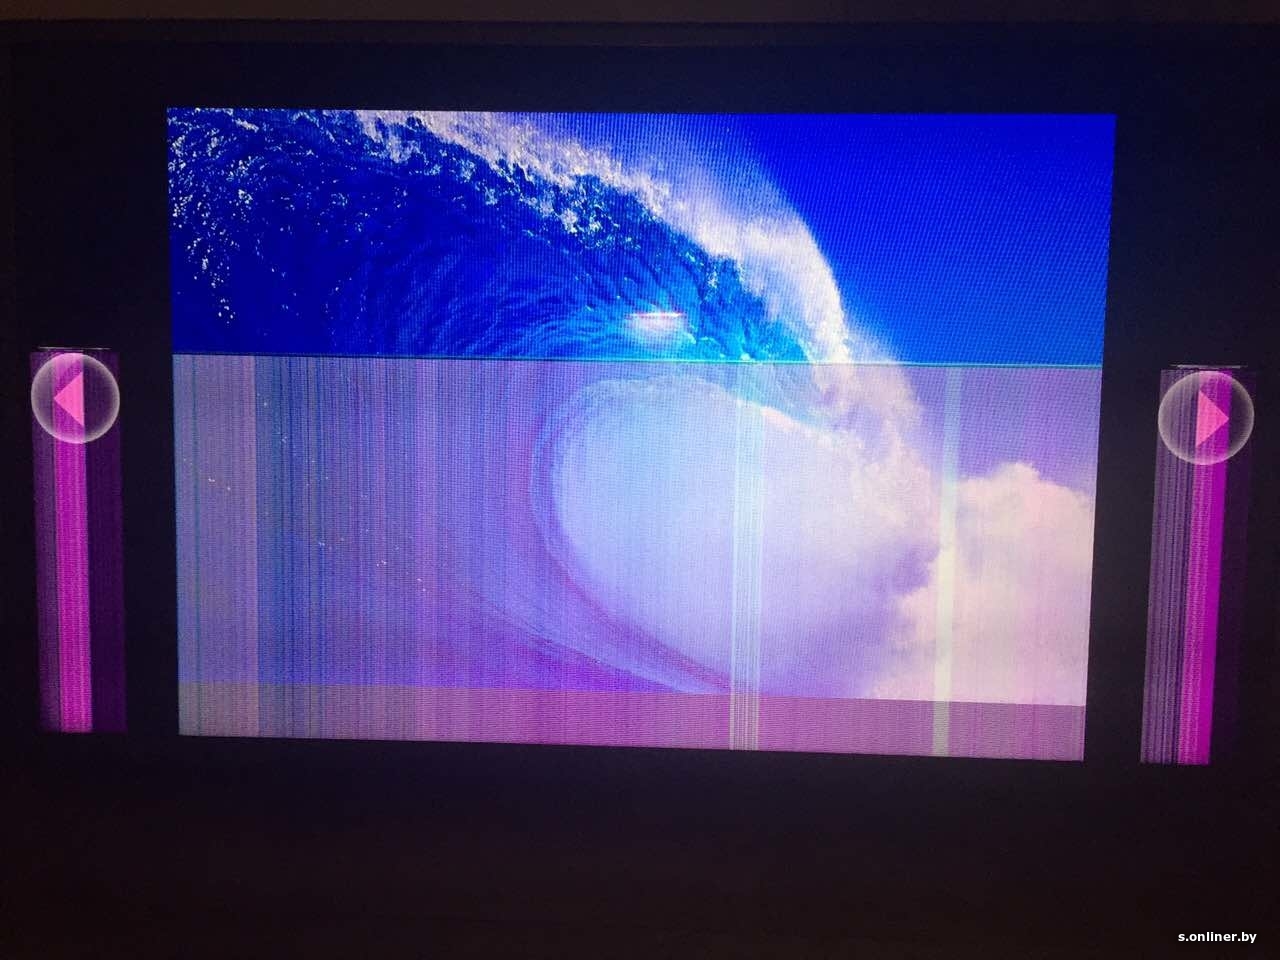 Жк телевизор полосы на экране. ЖК самсунг вертикальная полоса. Телевизор самсунг 32 показывает снизу экран часть верха. LG плазма горизонтальная полоса. Полосы на экране телевизора Samsung.